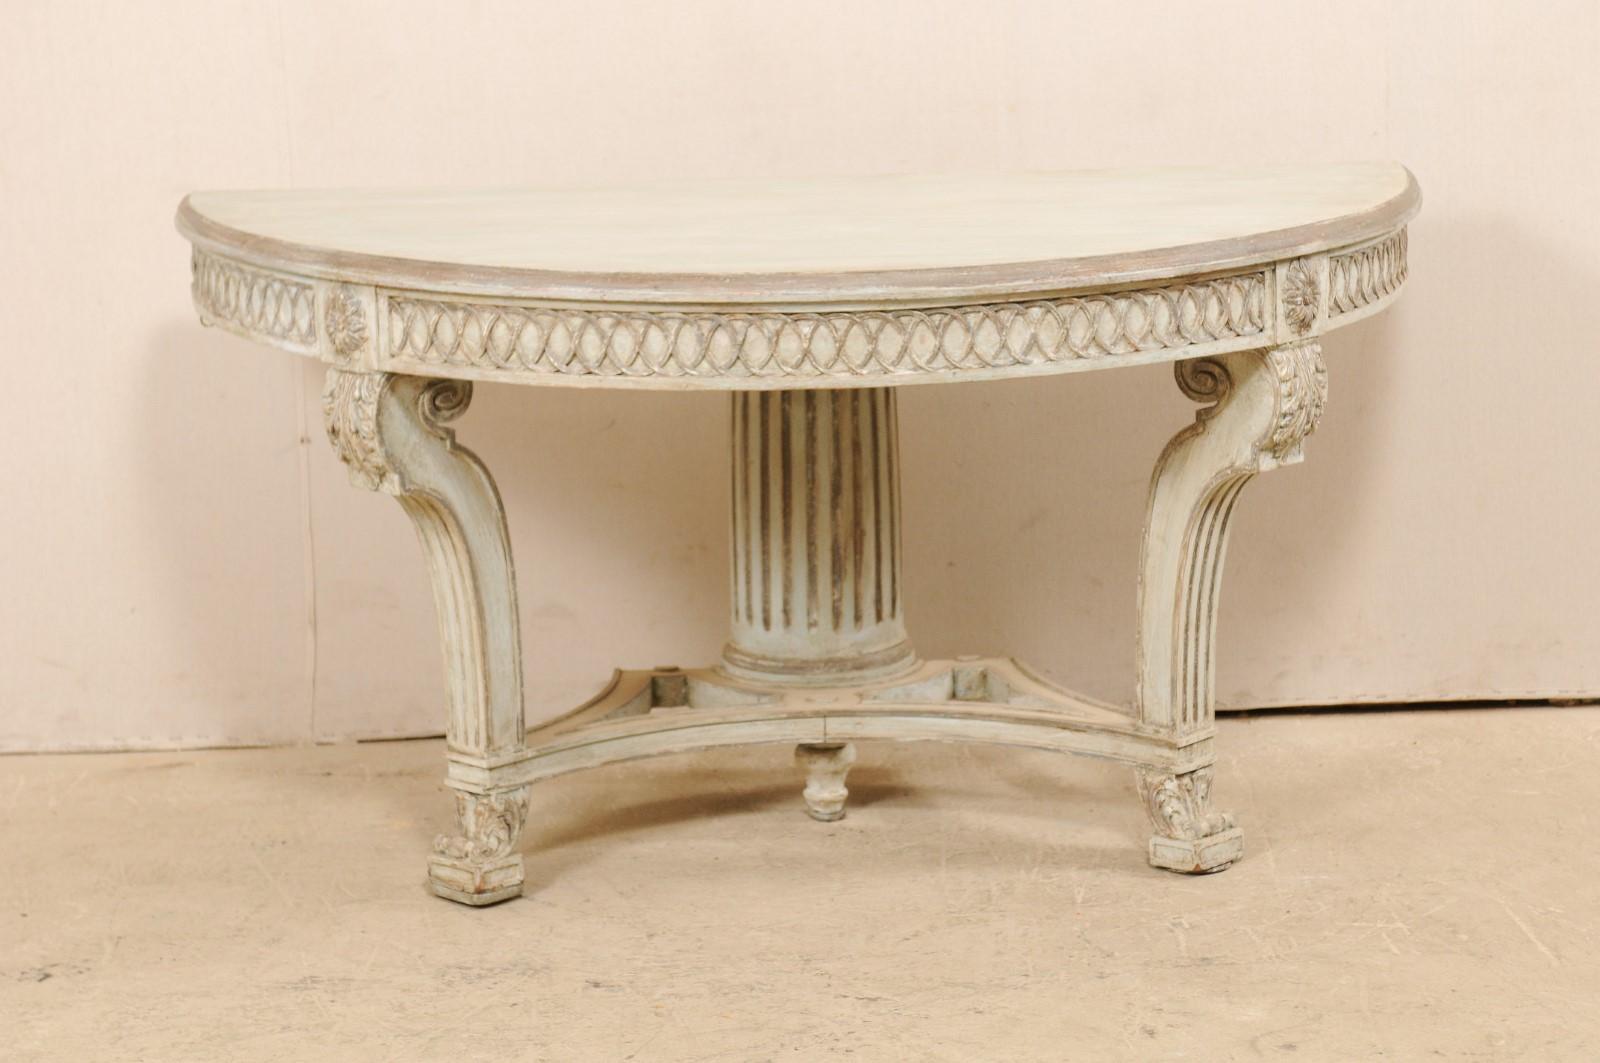 Une table console demi-ronde italienne avec des détails joliment sculptés du milieu du 20e siècle. Cette table demilune vintage d'Italie présente un plateau en forme de demi-lune, avec un tablier épais sous lequel a été sculpté un motif circulaire